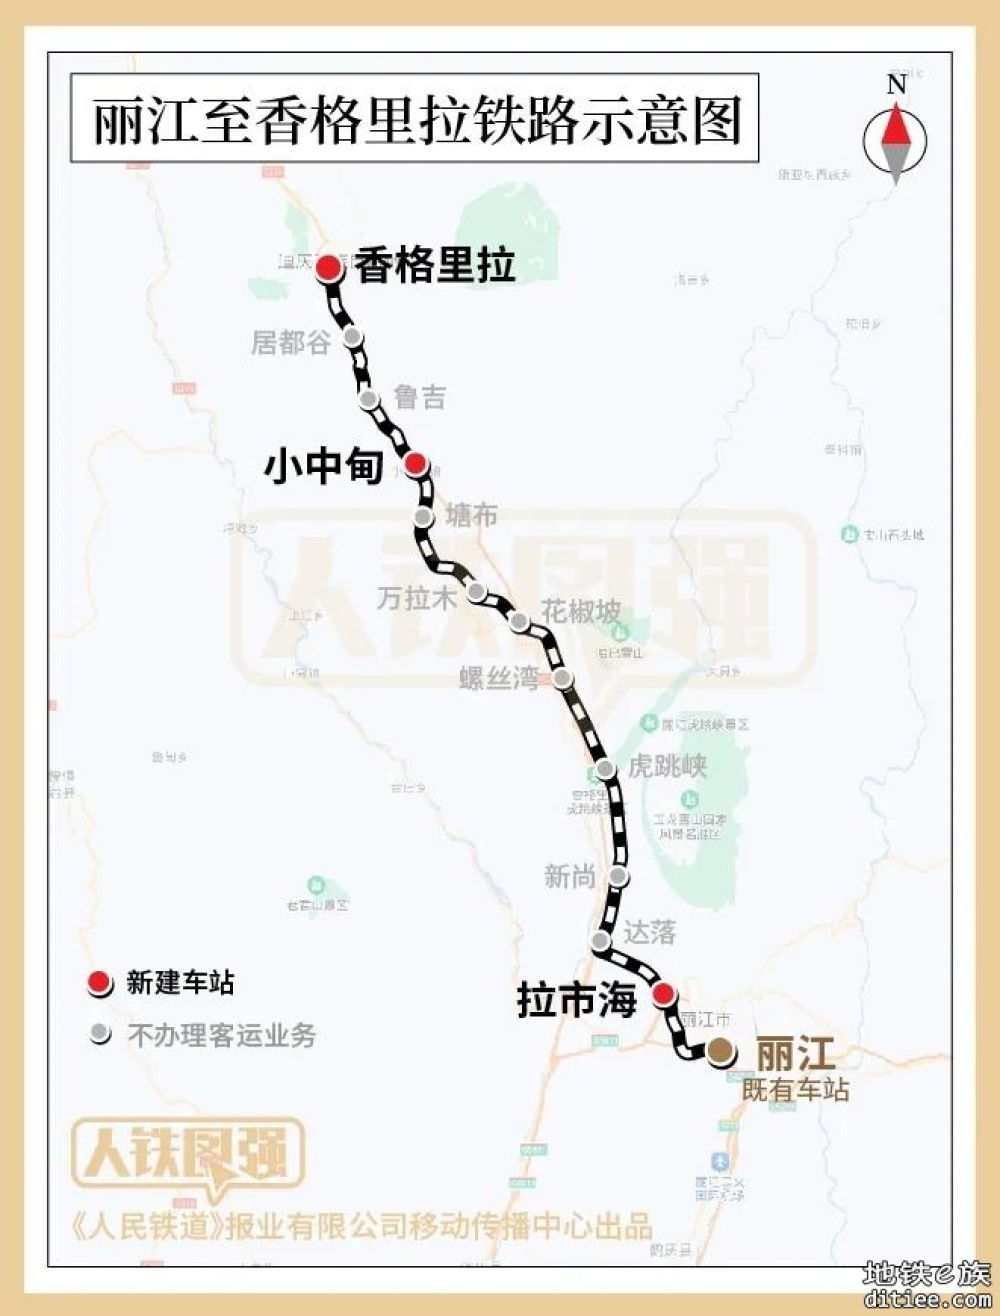 丽江至香格里拉铁路11月26日开通运营